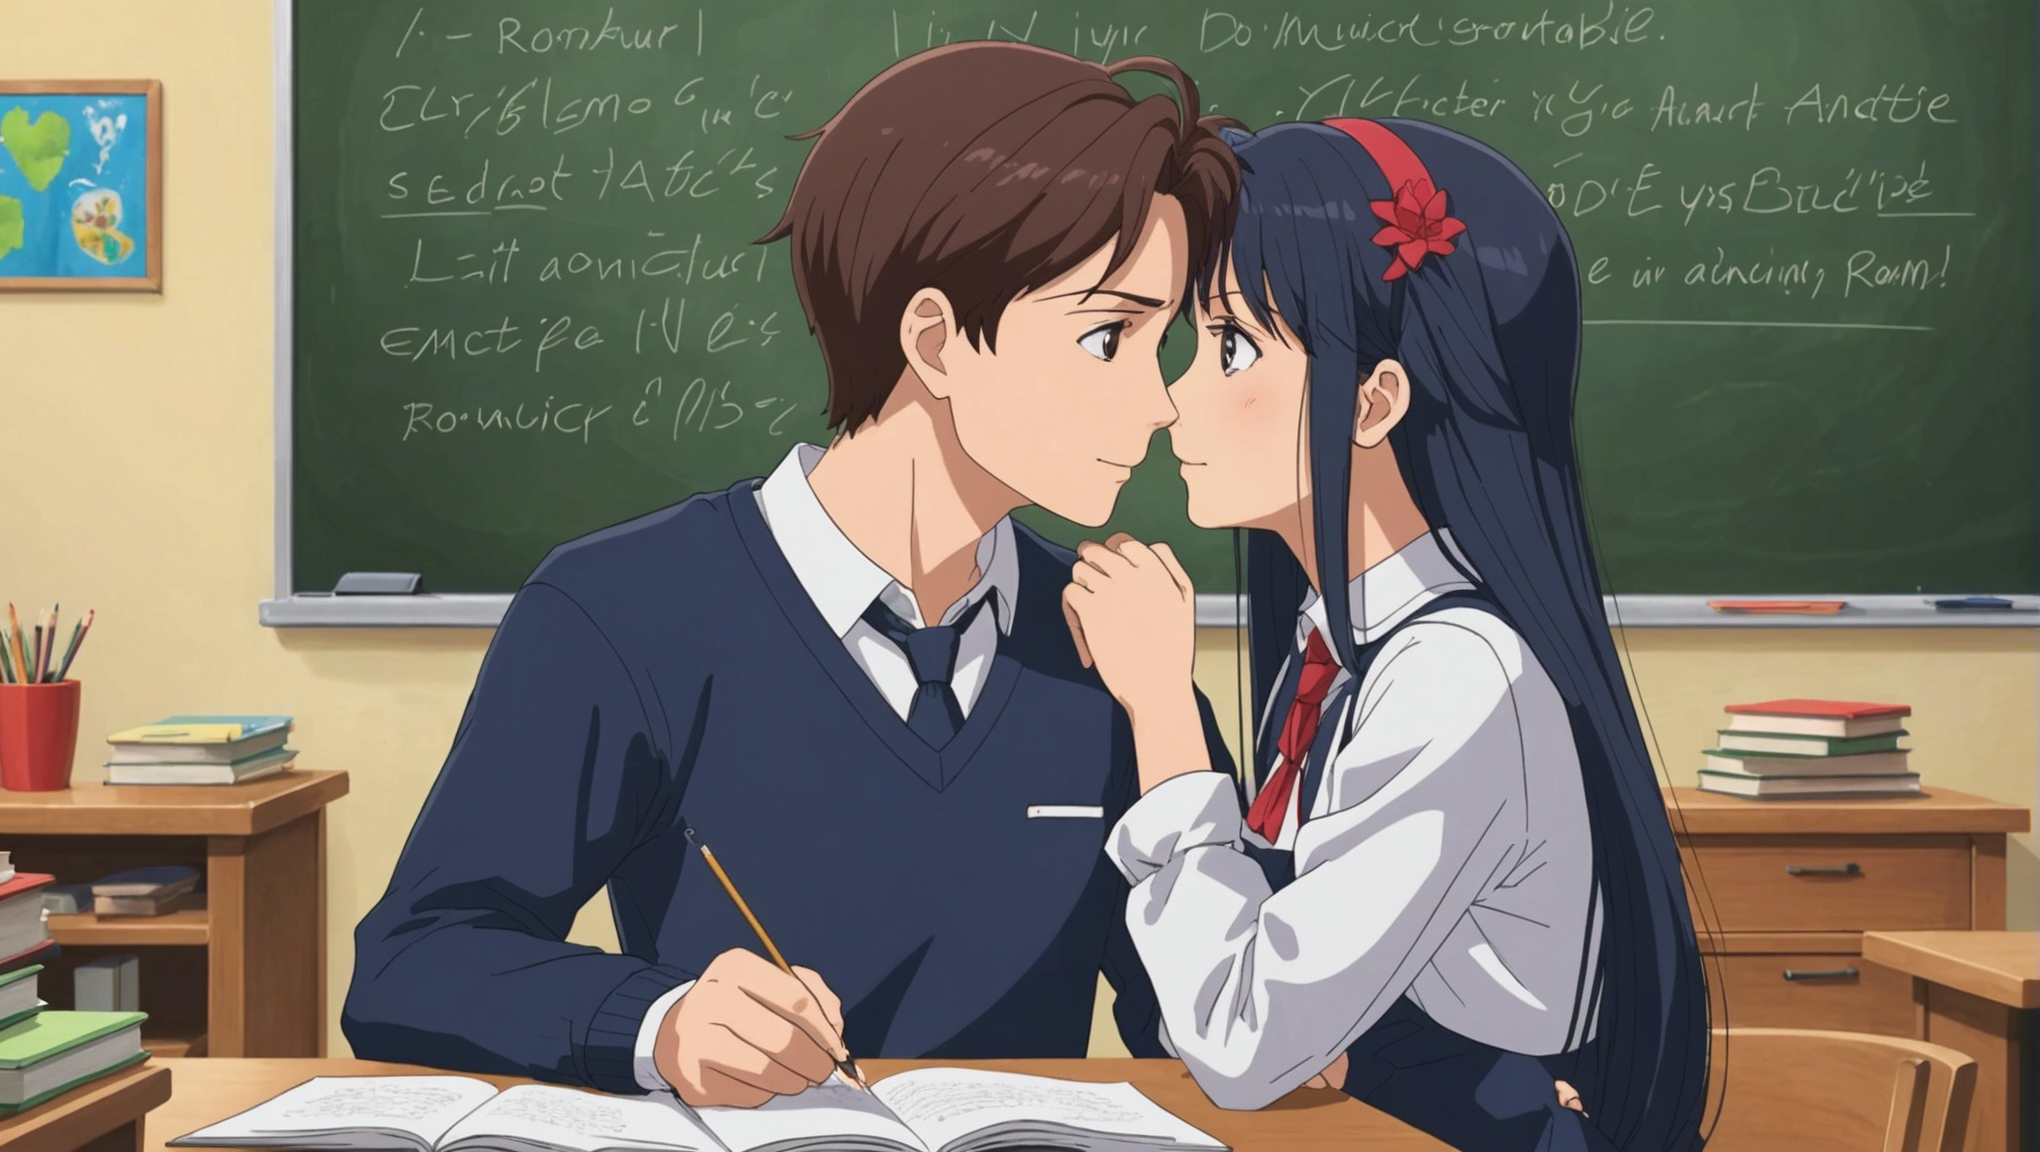 découvrez si l'amour véritable peut éclore dans un lycée, à l'instar des animes romantiques, dans cette exploration captivante.